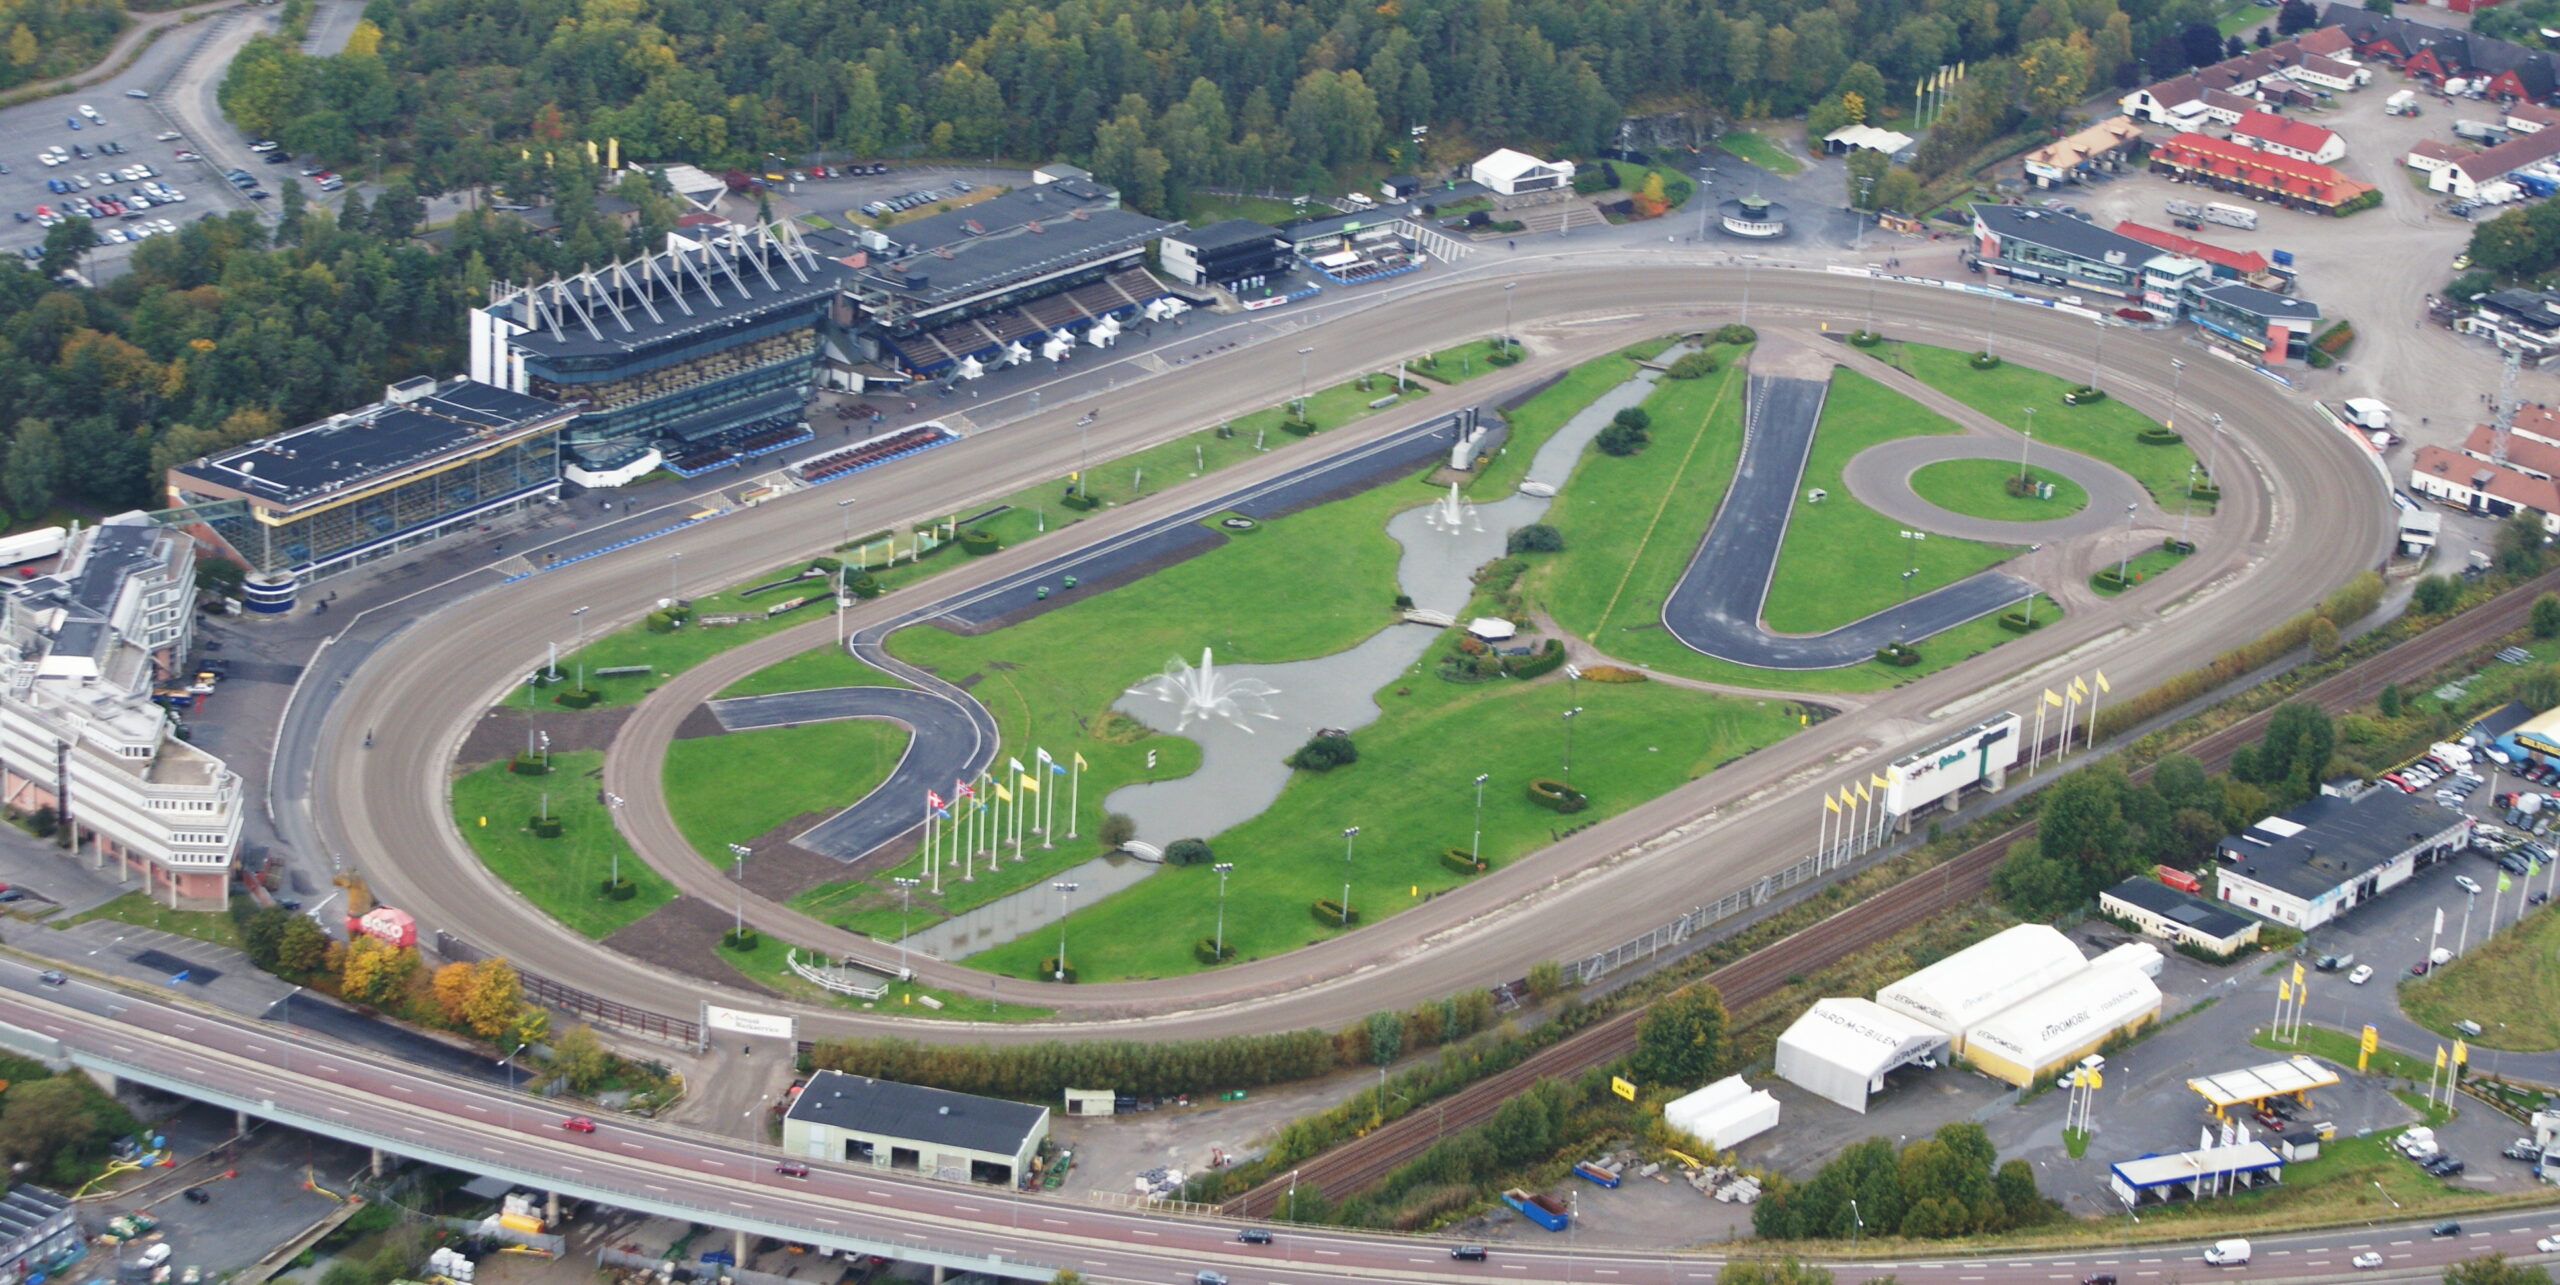 How Popular Is Horse Racing In Sweden?